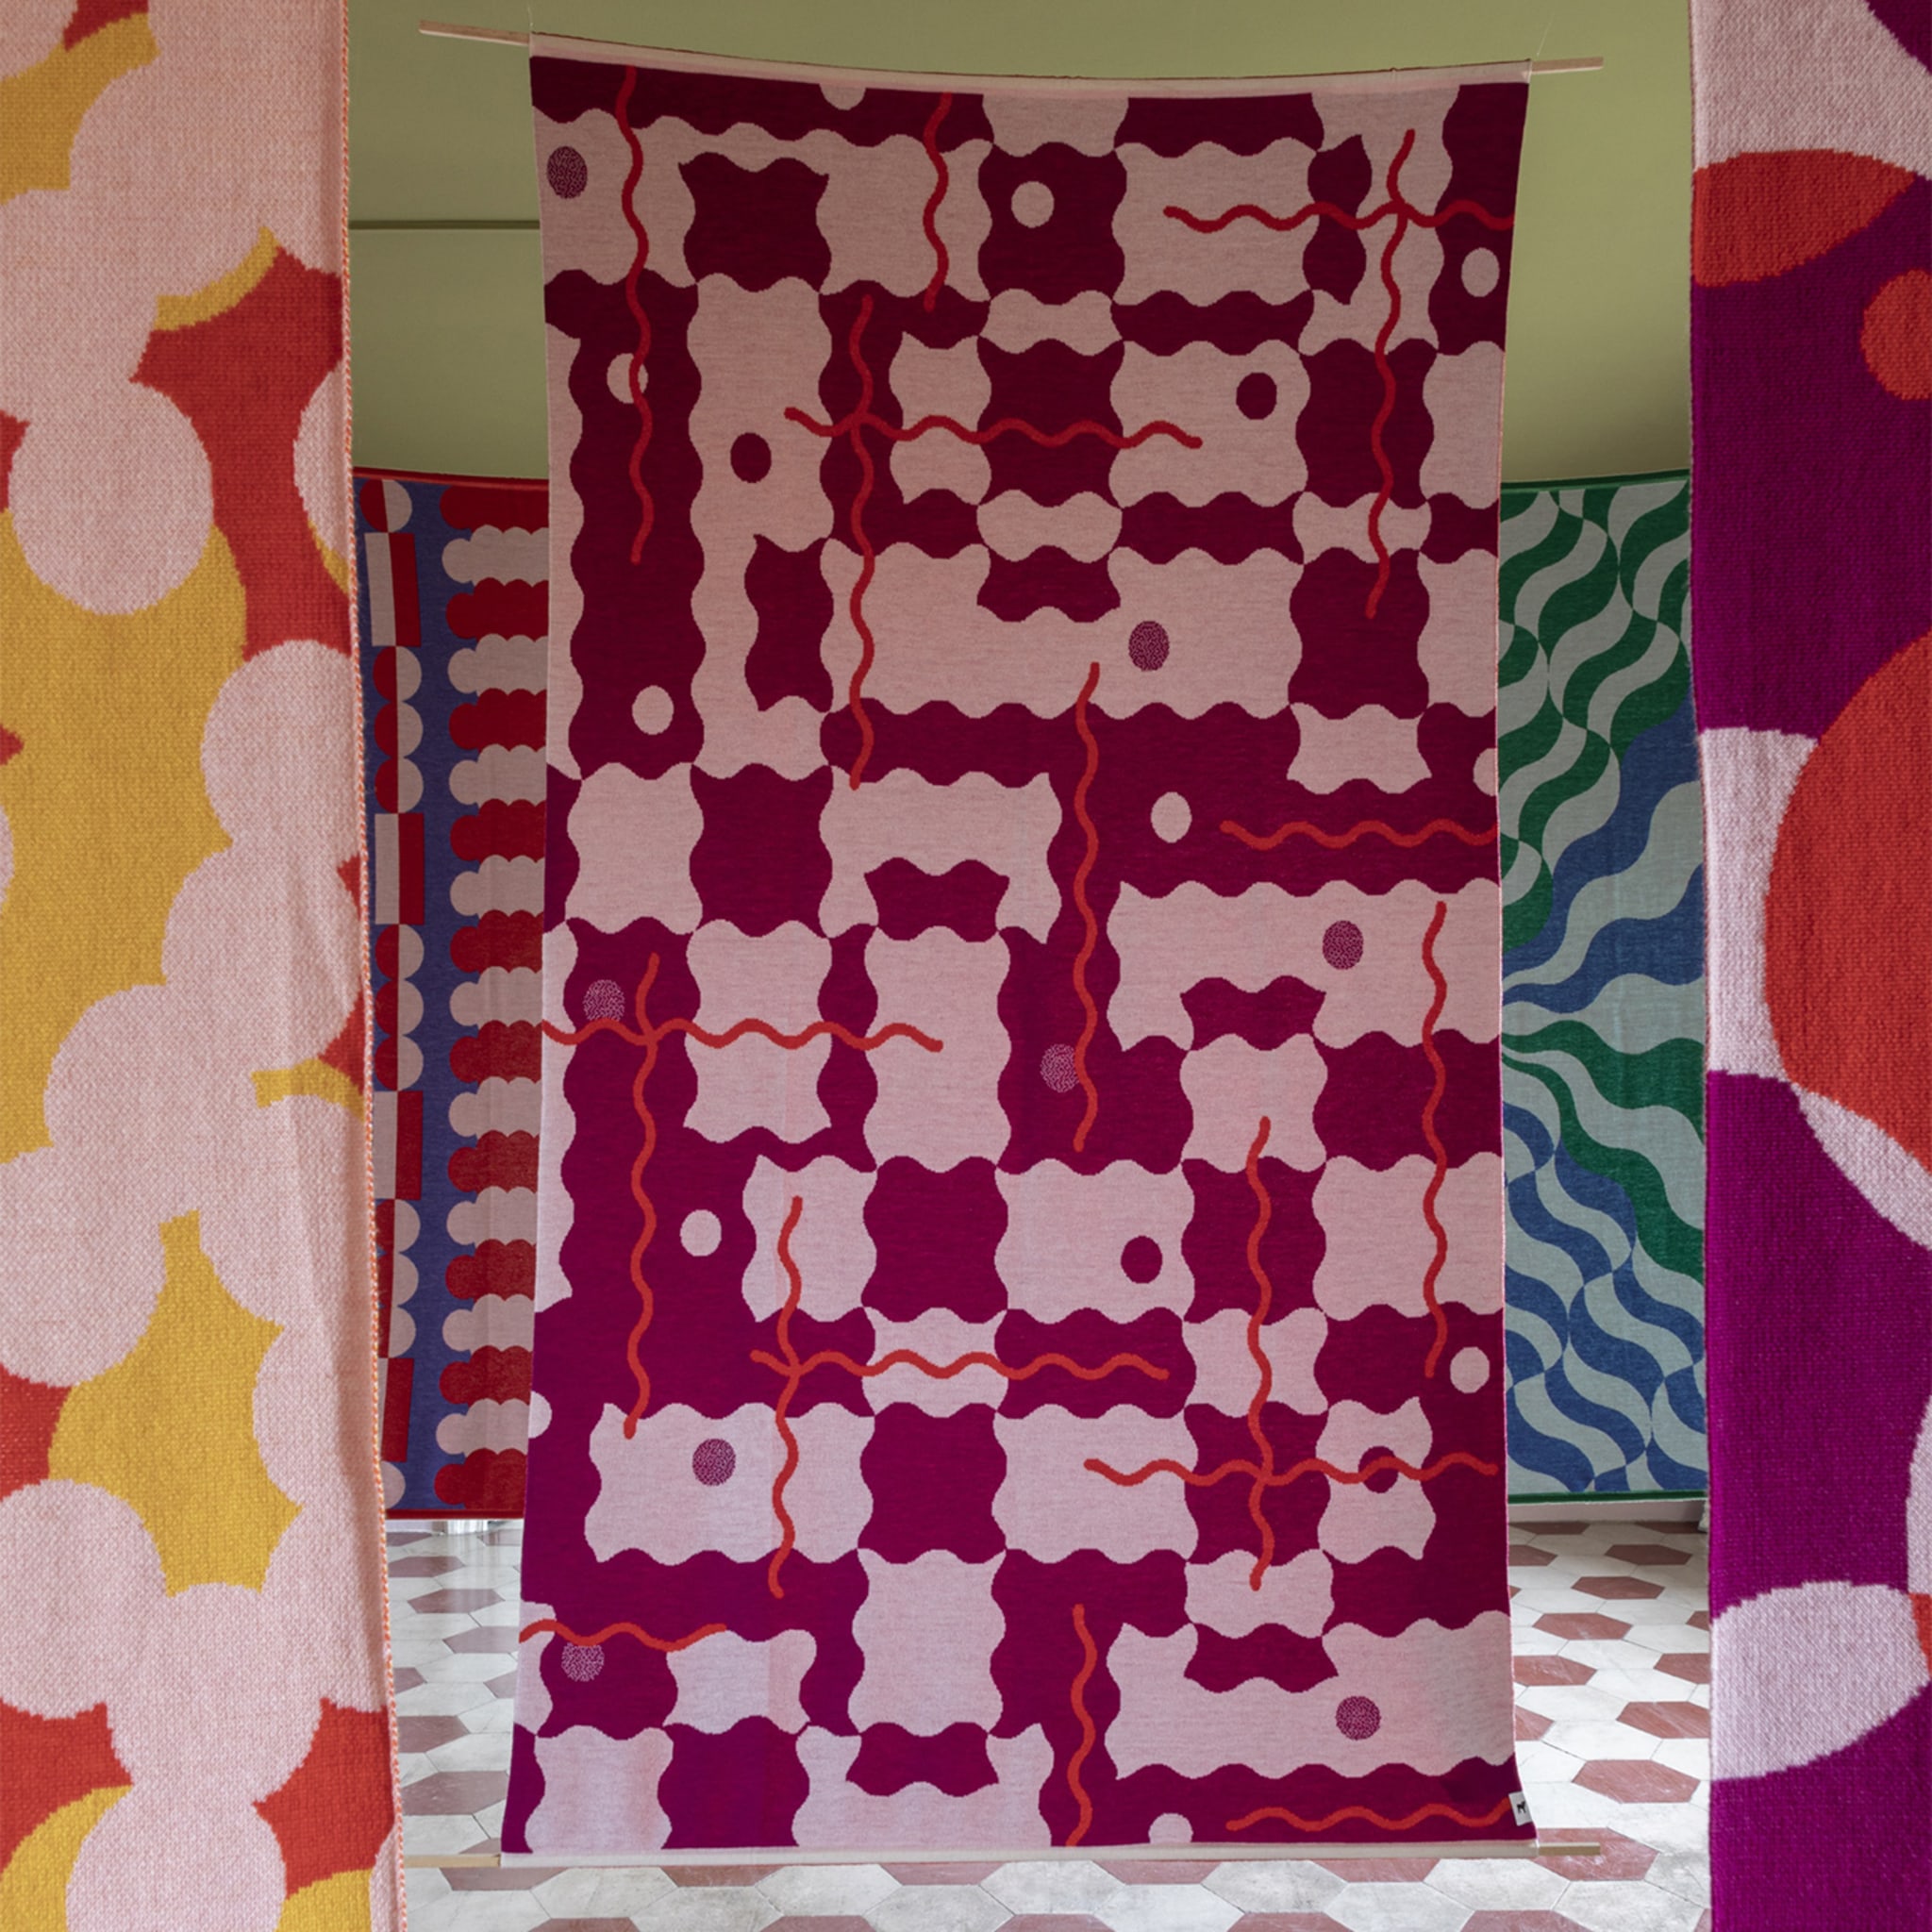 Trip 4 Polychrome Blanket/Tapestry by Serena Confalonieri - Alternative view 1